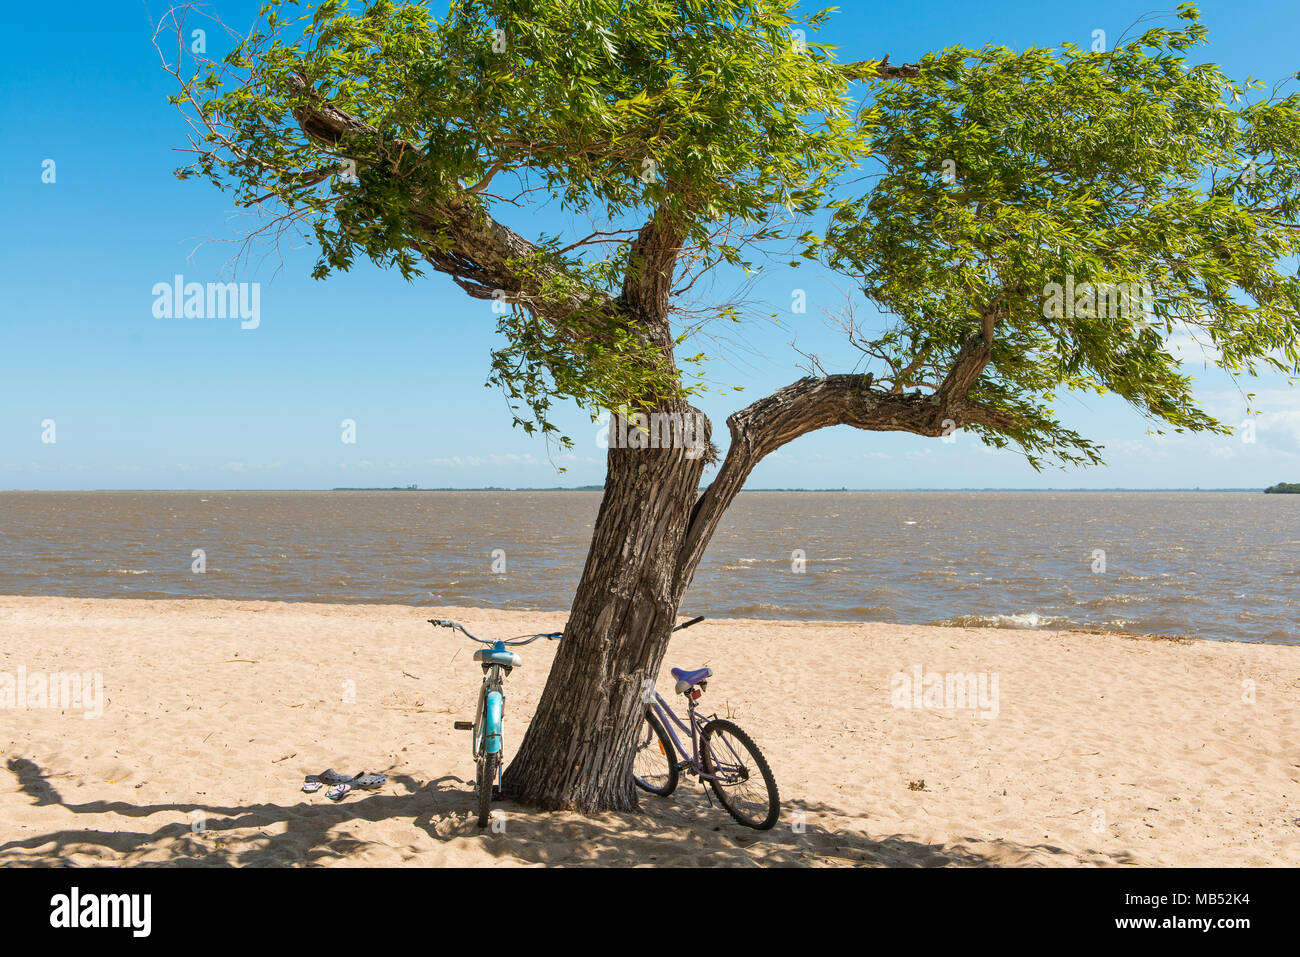 Dos bicicletas ha impactado contra un árbol en la playa del río de la Plata, Colonia del Sacramento, Uruguay Foto de stock